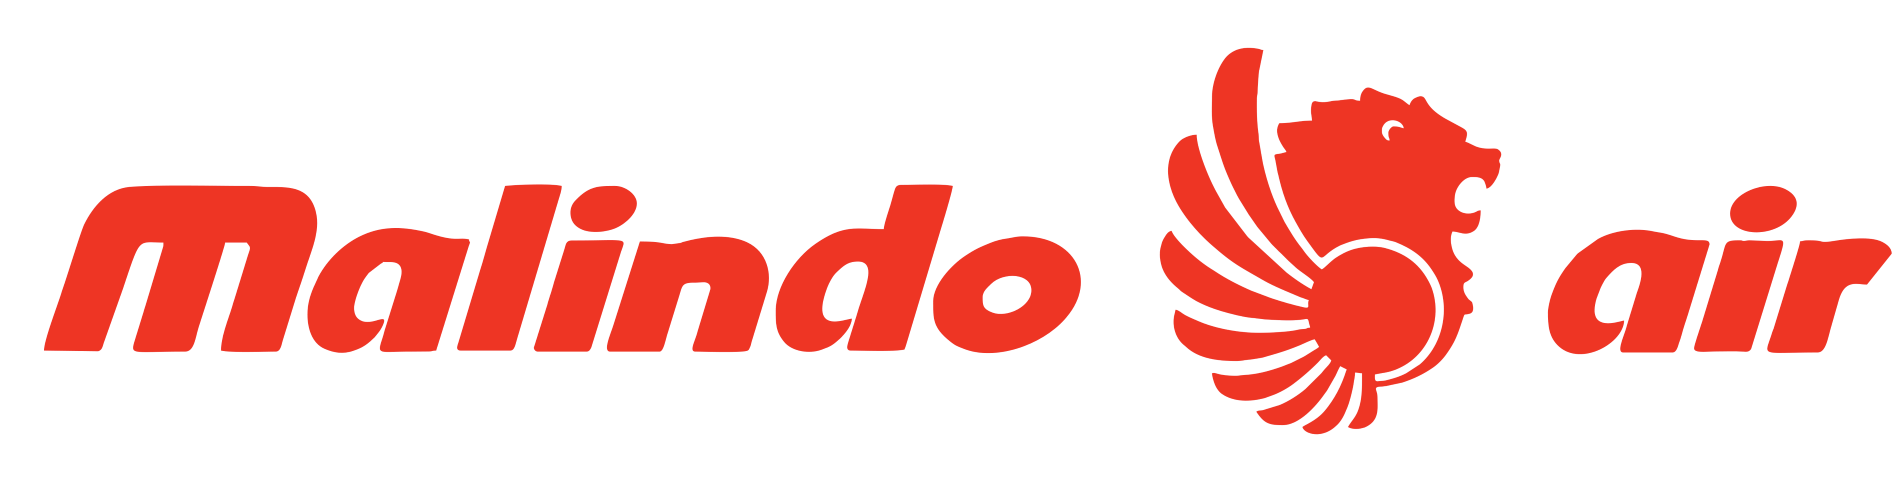 Malindo Air logo, logotype